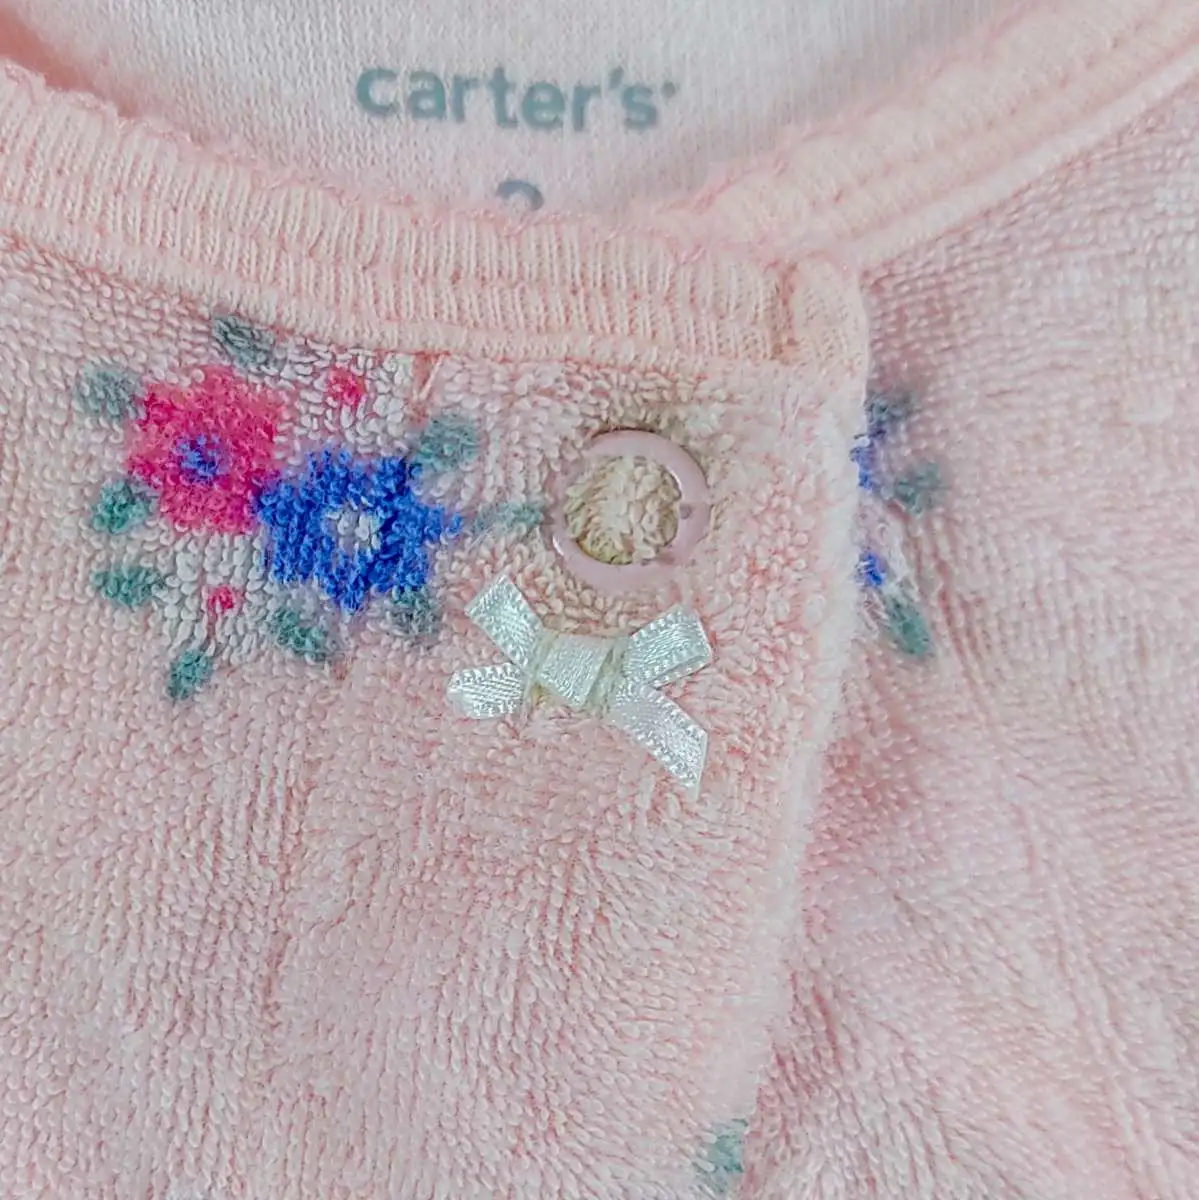 carter's ชุดหมีแขนขายาวสีชมพูลายดอก 3mชุดหมีแขนขายาวสีชมพูเข้มลายจุดสีขาว 3m 